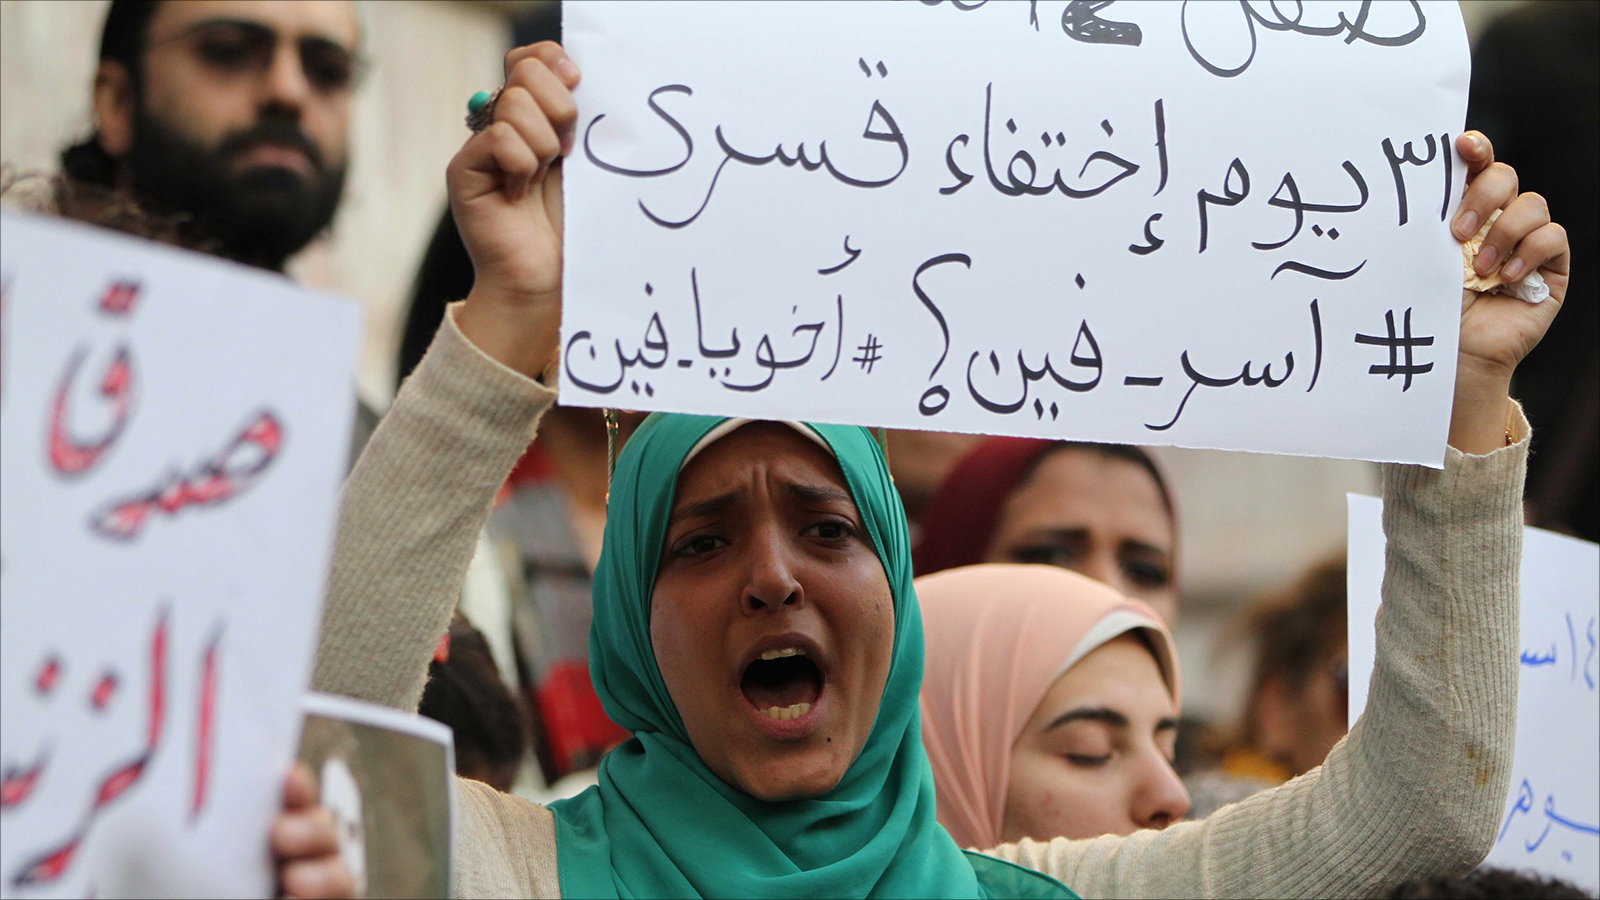 ‪حوادث الإخفاء القسري المتكررة تثير غضبا واسعا في مصر‬ (الجزيرة)